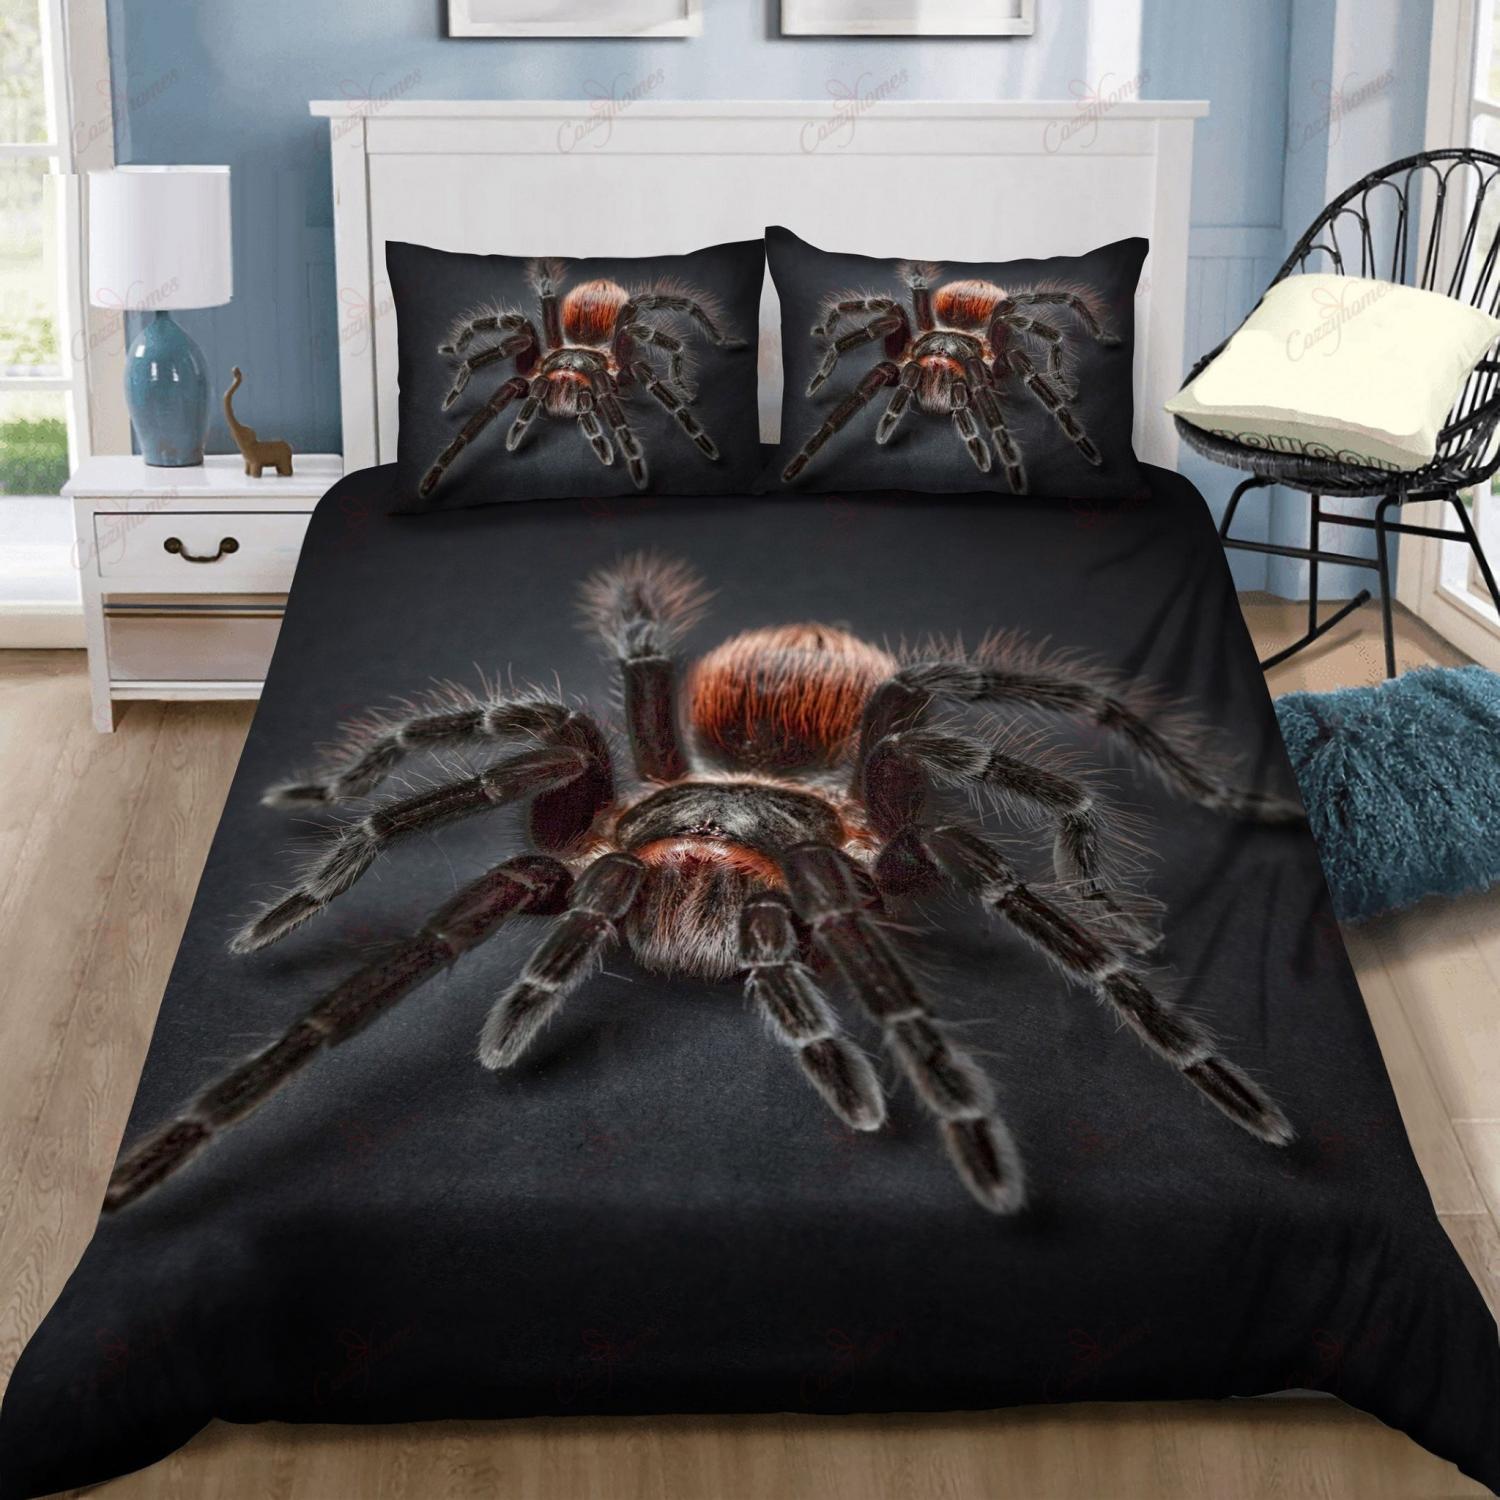 Creepy Scary Giant Tarantula Bed Set Sheets